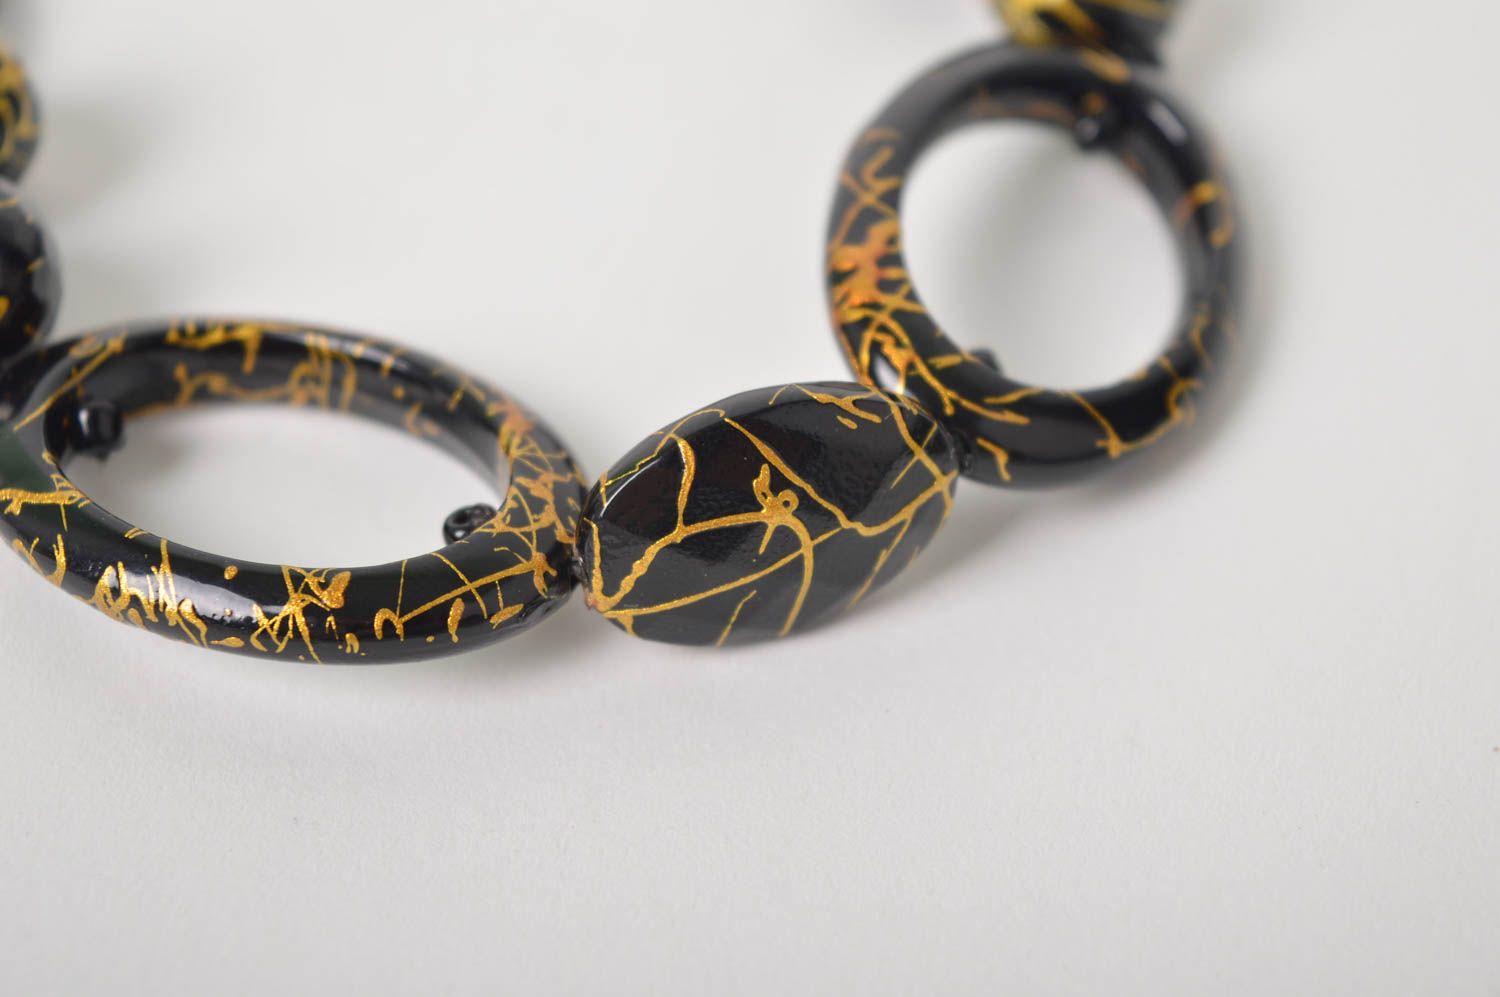 Handmade elegant black and gold color adjustable bracelet for women photo 4